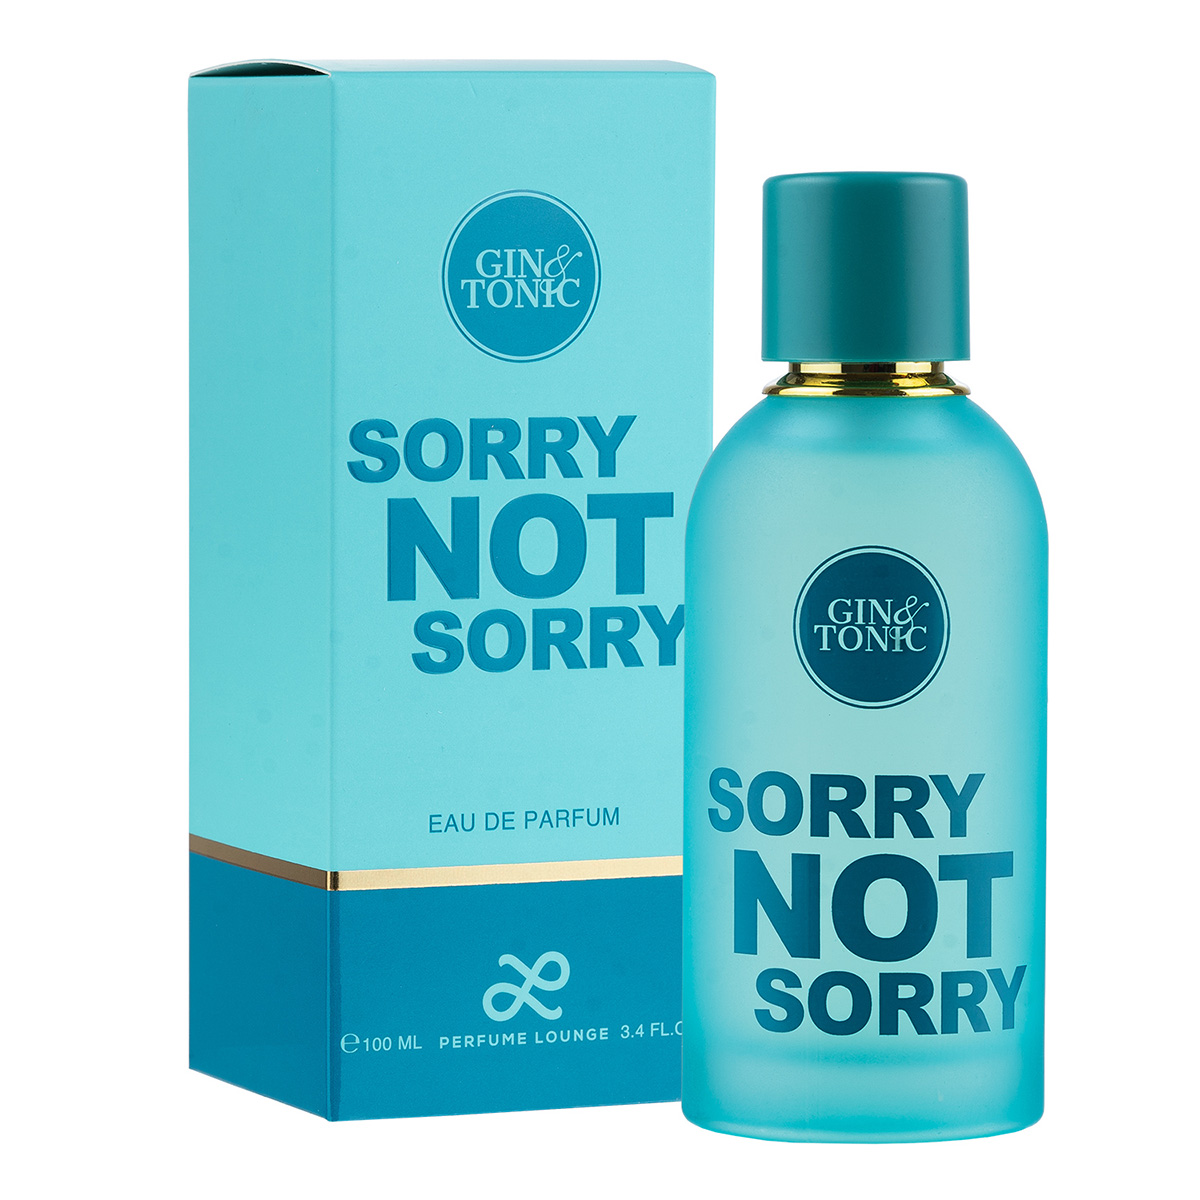 Perfume Lounge Gin & Tonic Sorry Not Sorry Eau De Parfum, 100ml